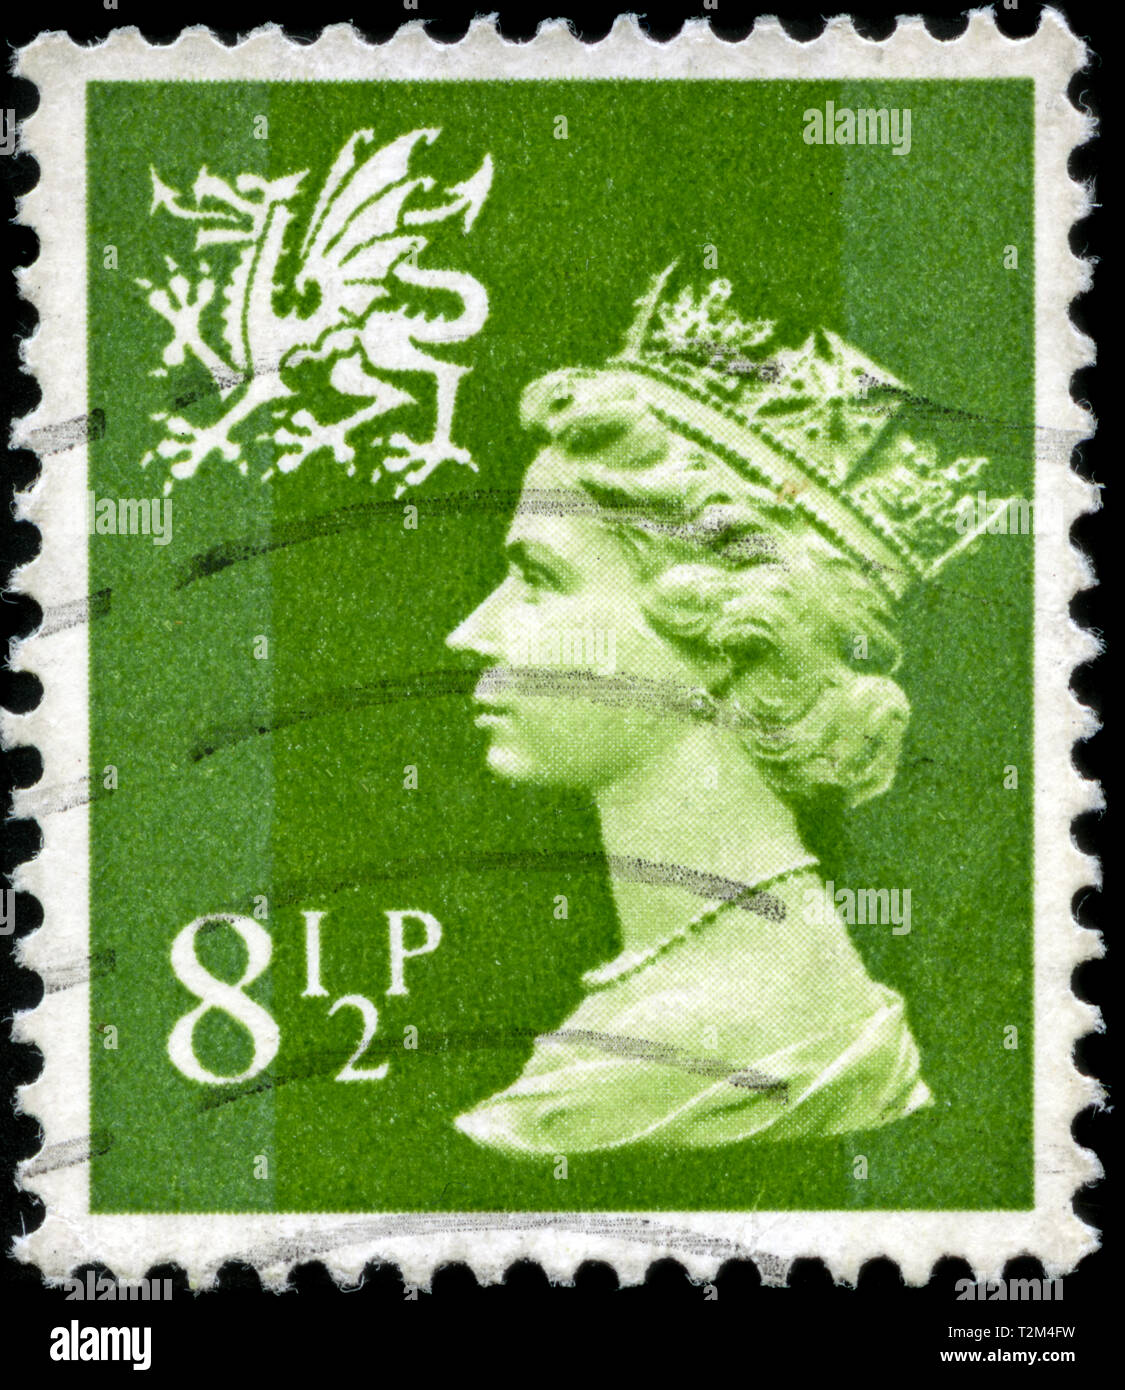 Timbre-poste du Royaume-Uni et l'Irlande du Nord à l'échelon régional - Pays de Galles série émise en 1976 Banque D'Images